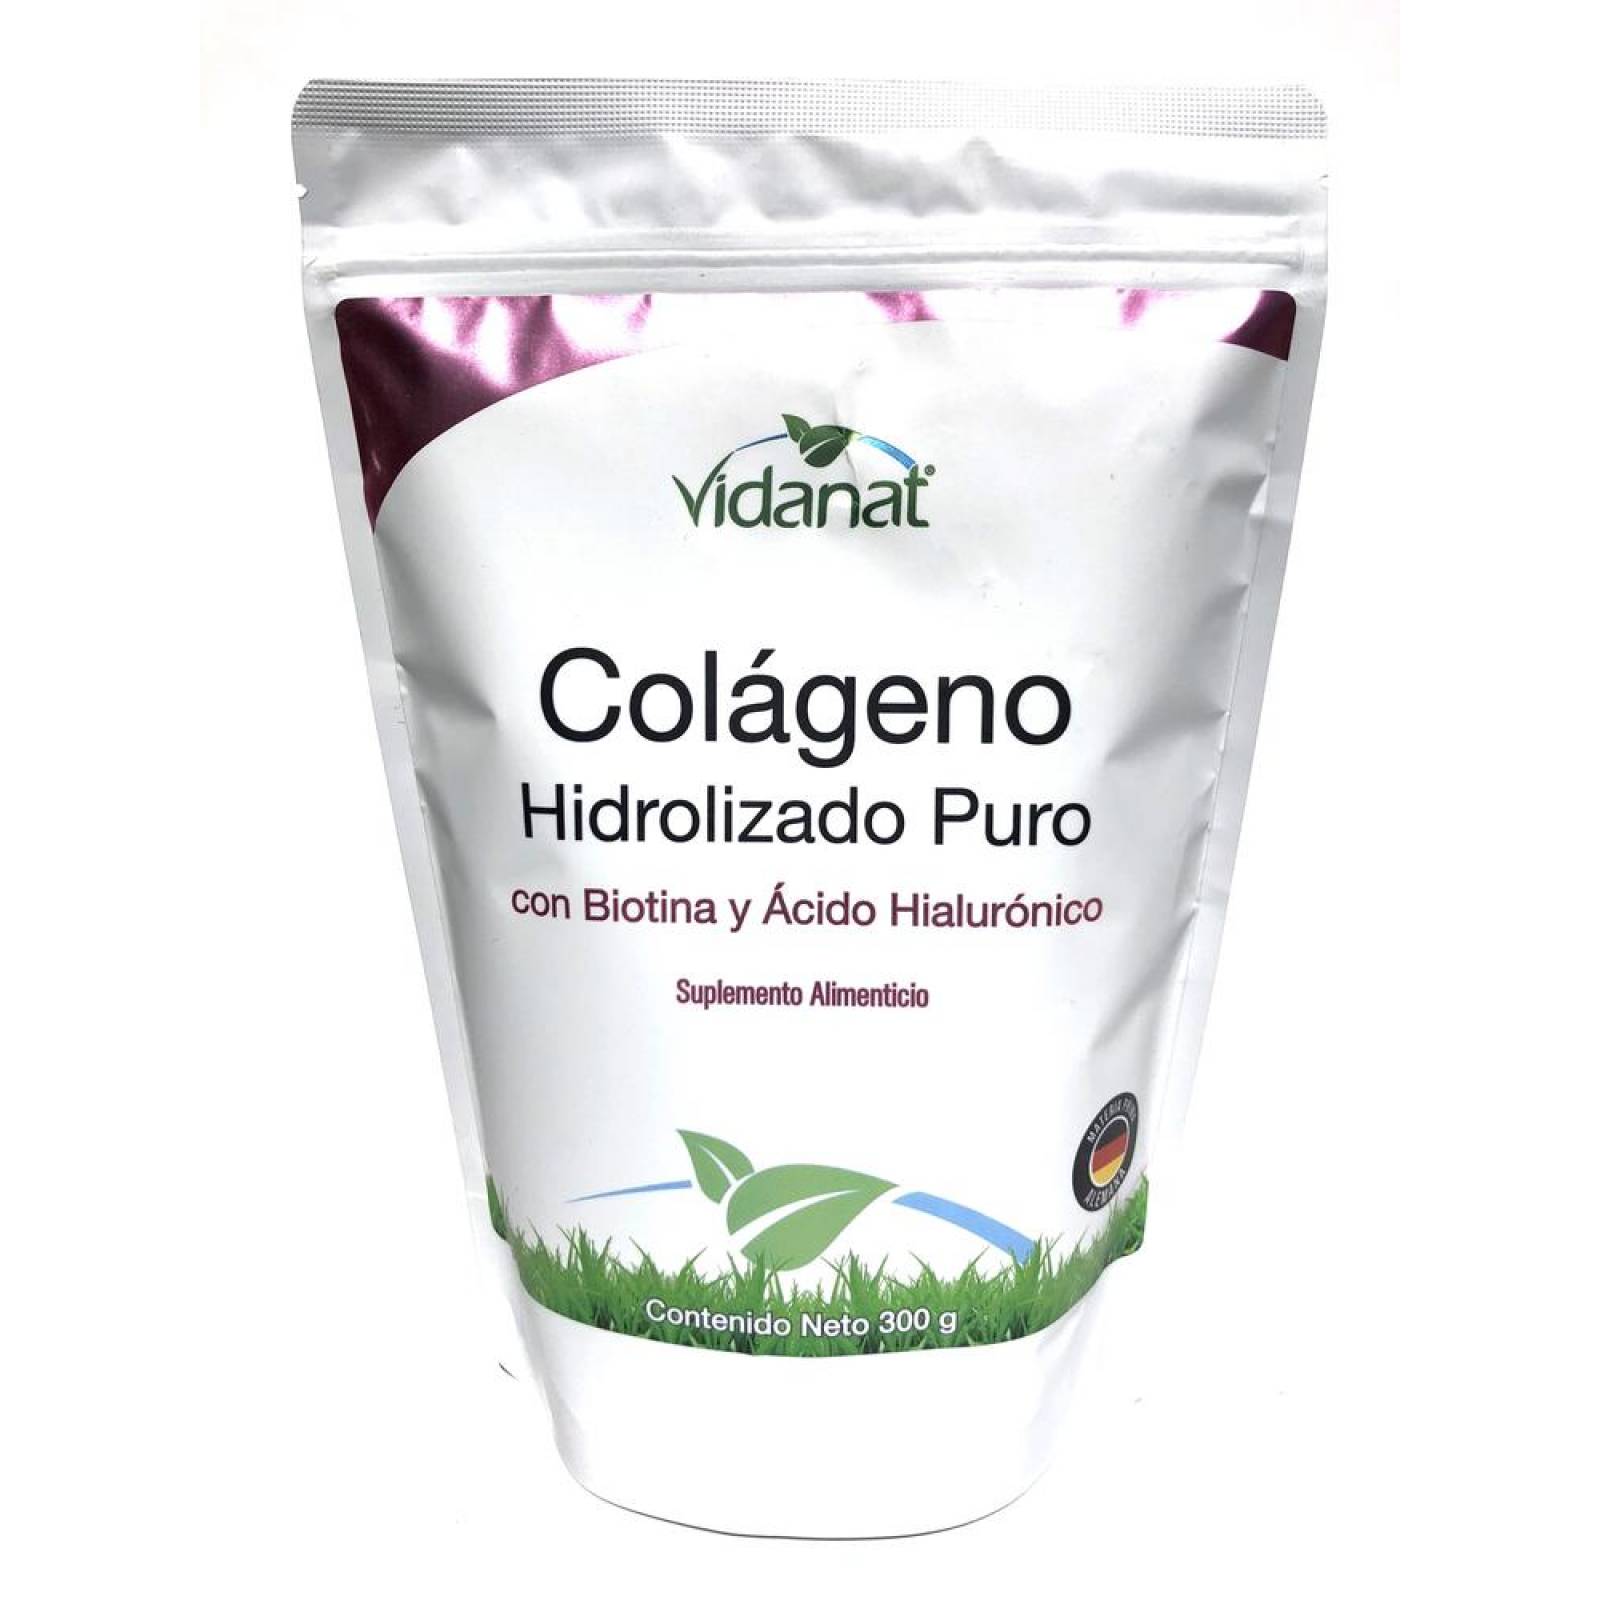 Colágeno Hidrolizado Puro, Biotina, Acido Hialurónico 300 grs 